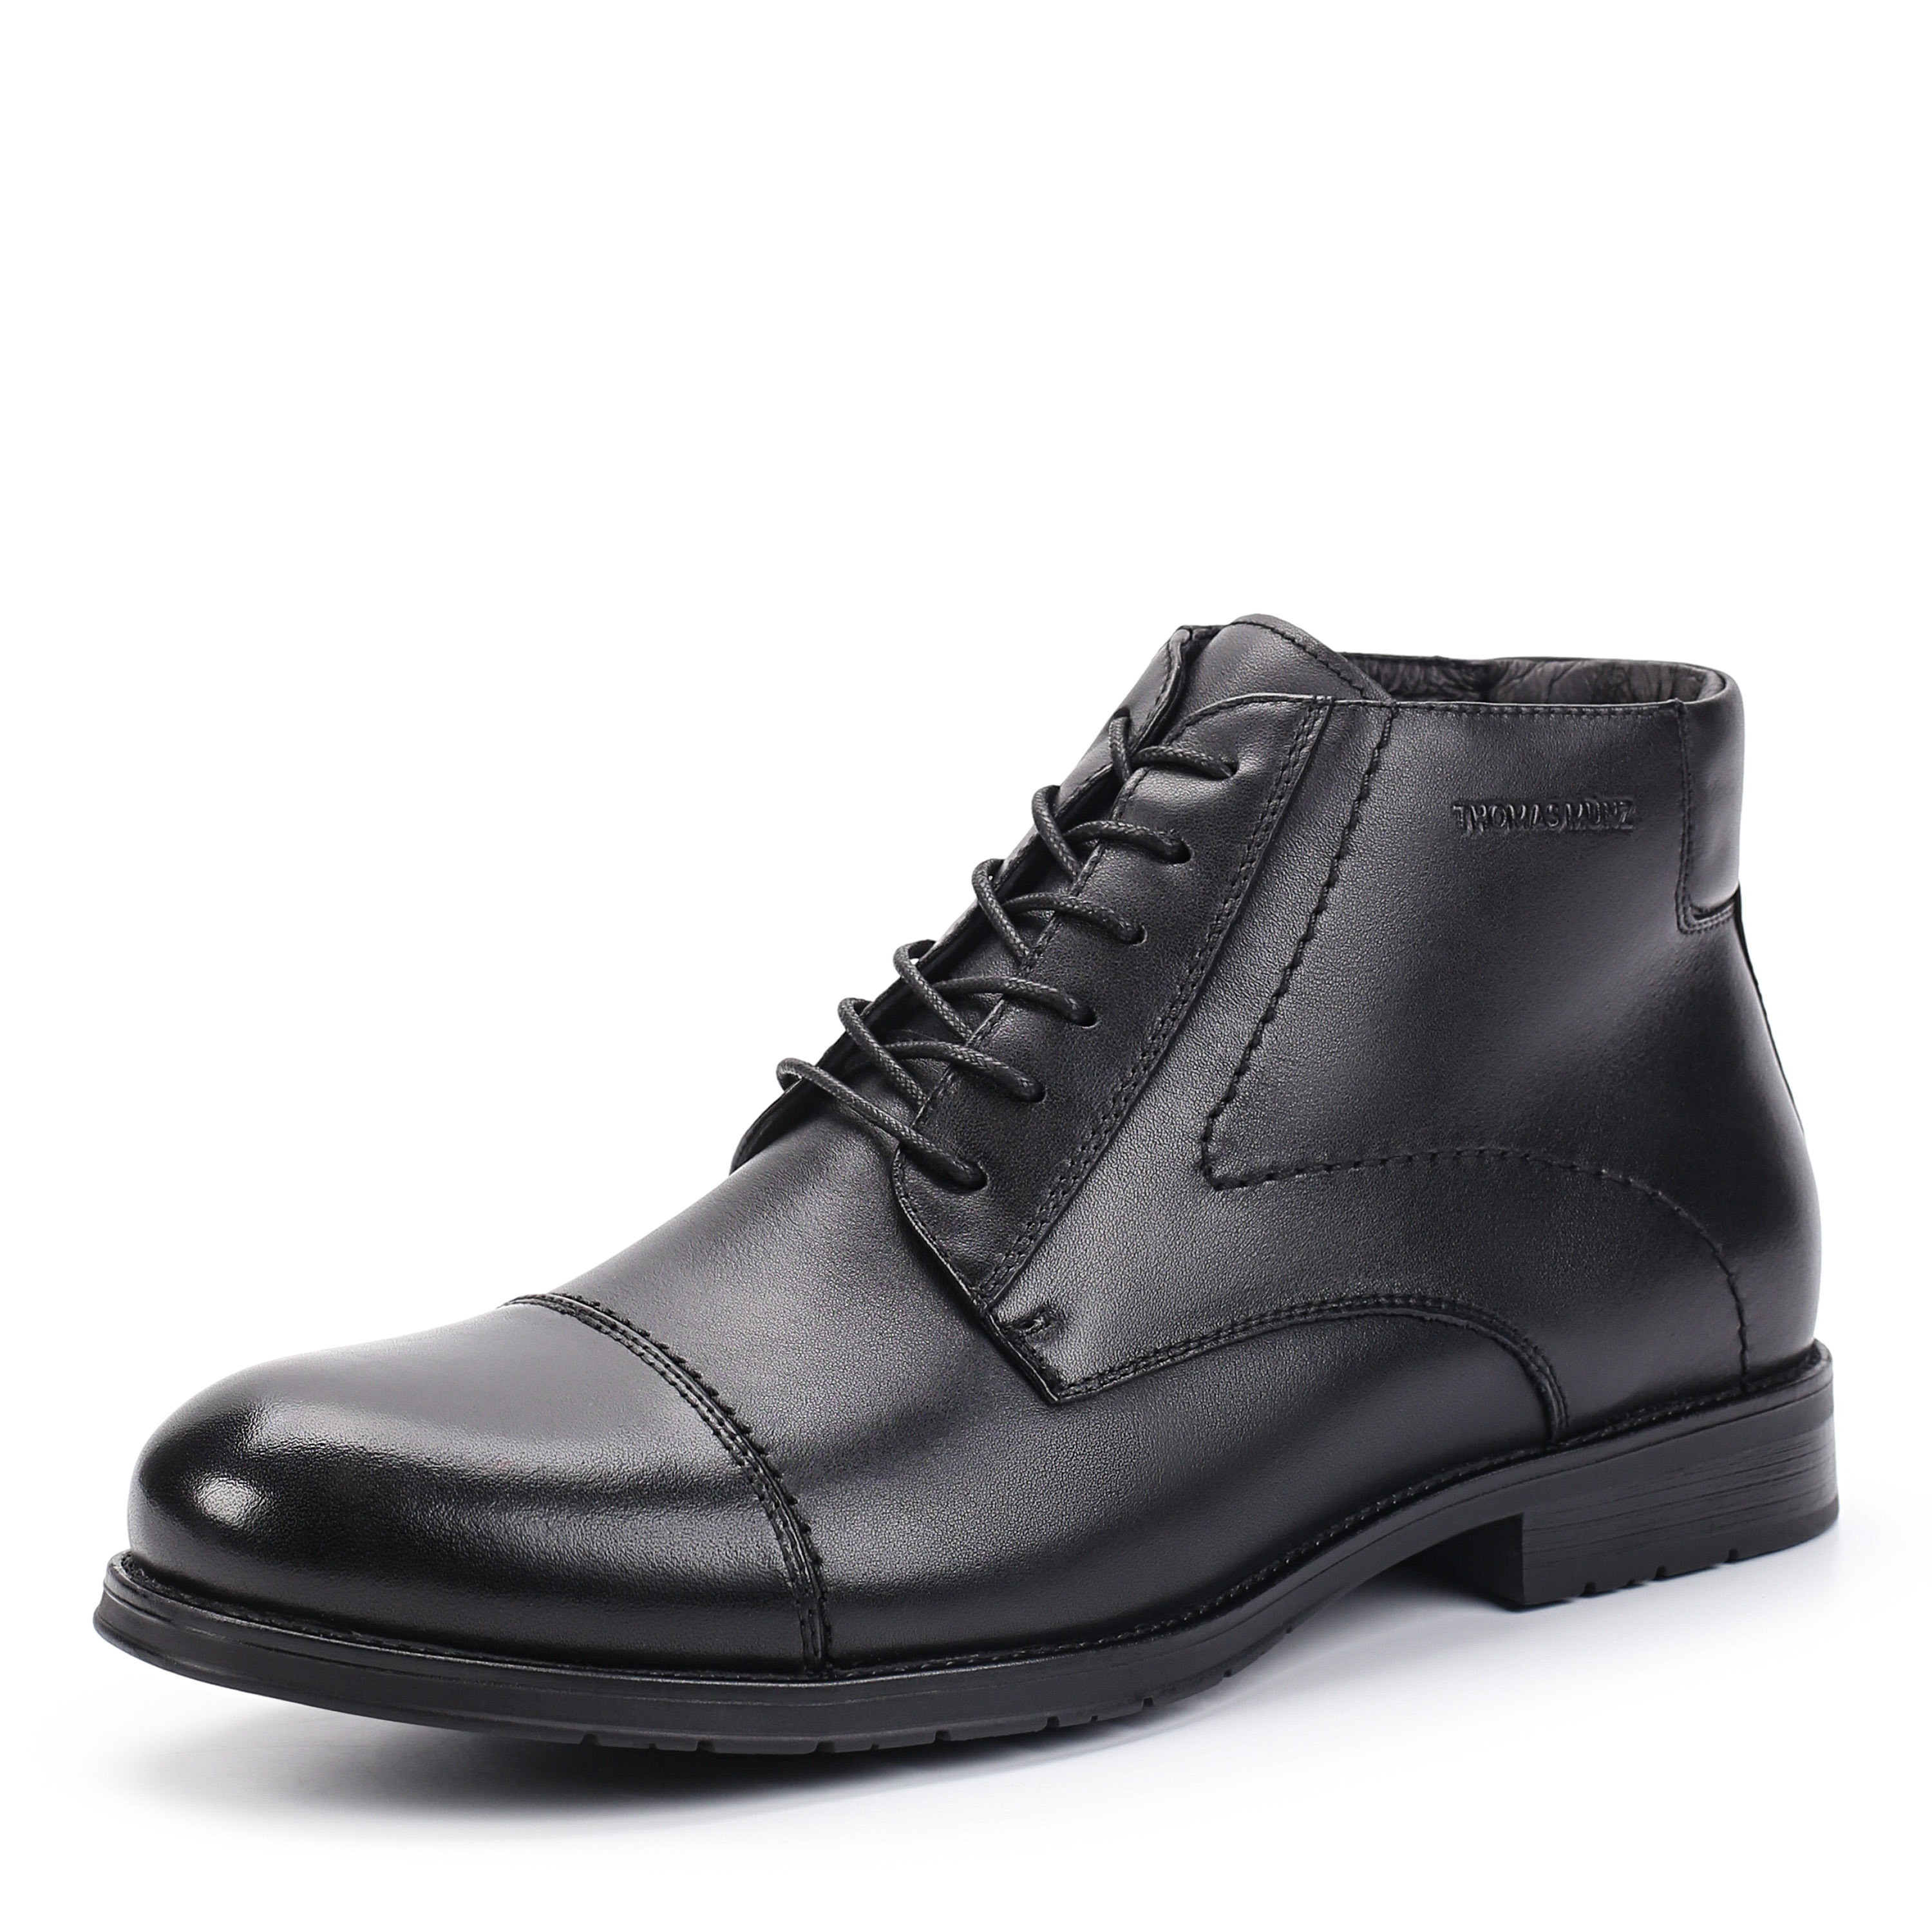 Ботинки Thomas Munz 104-140A-2102 104-140A-2102, цвет черный, размер 45 дерби - фото 2